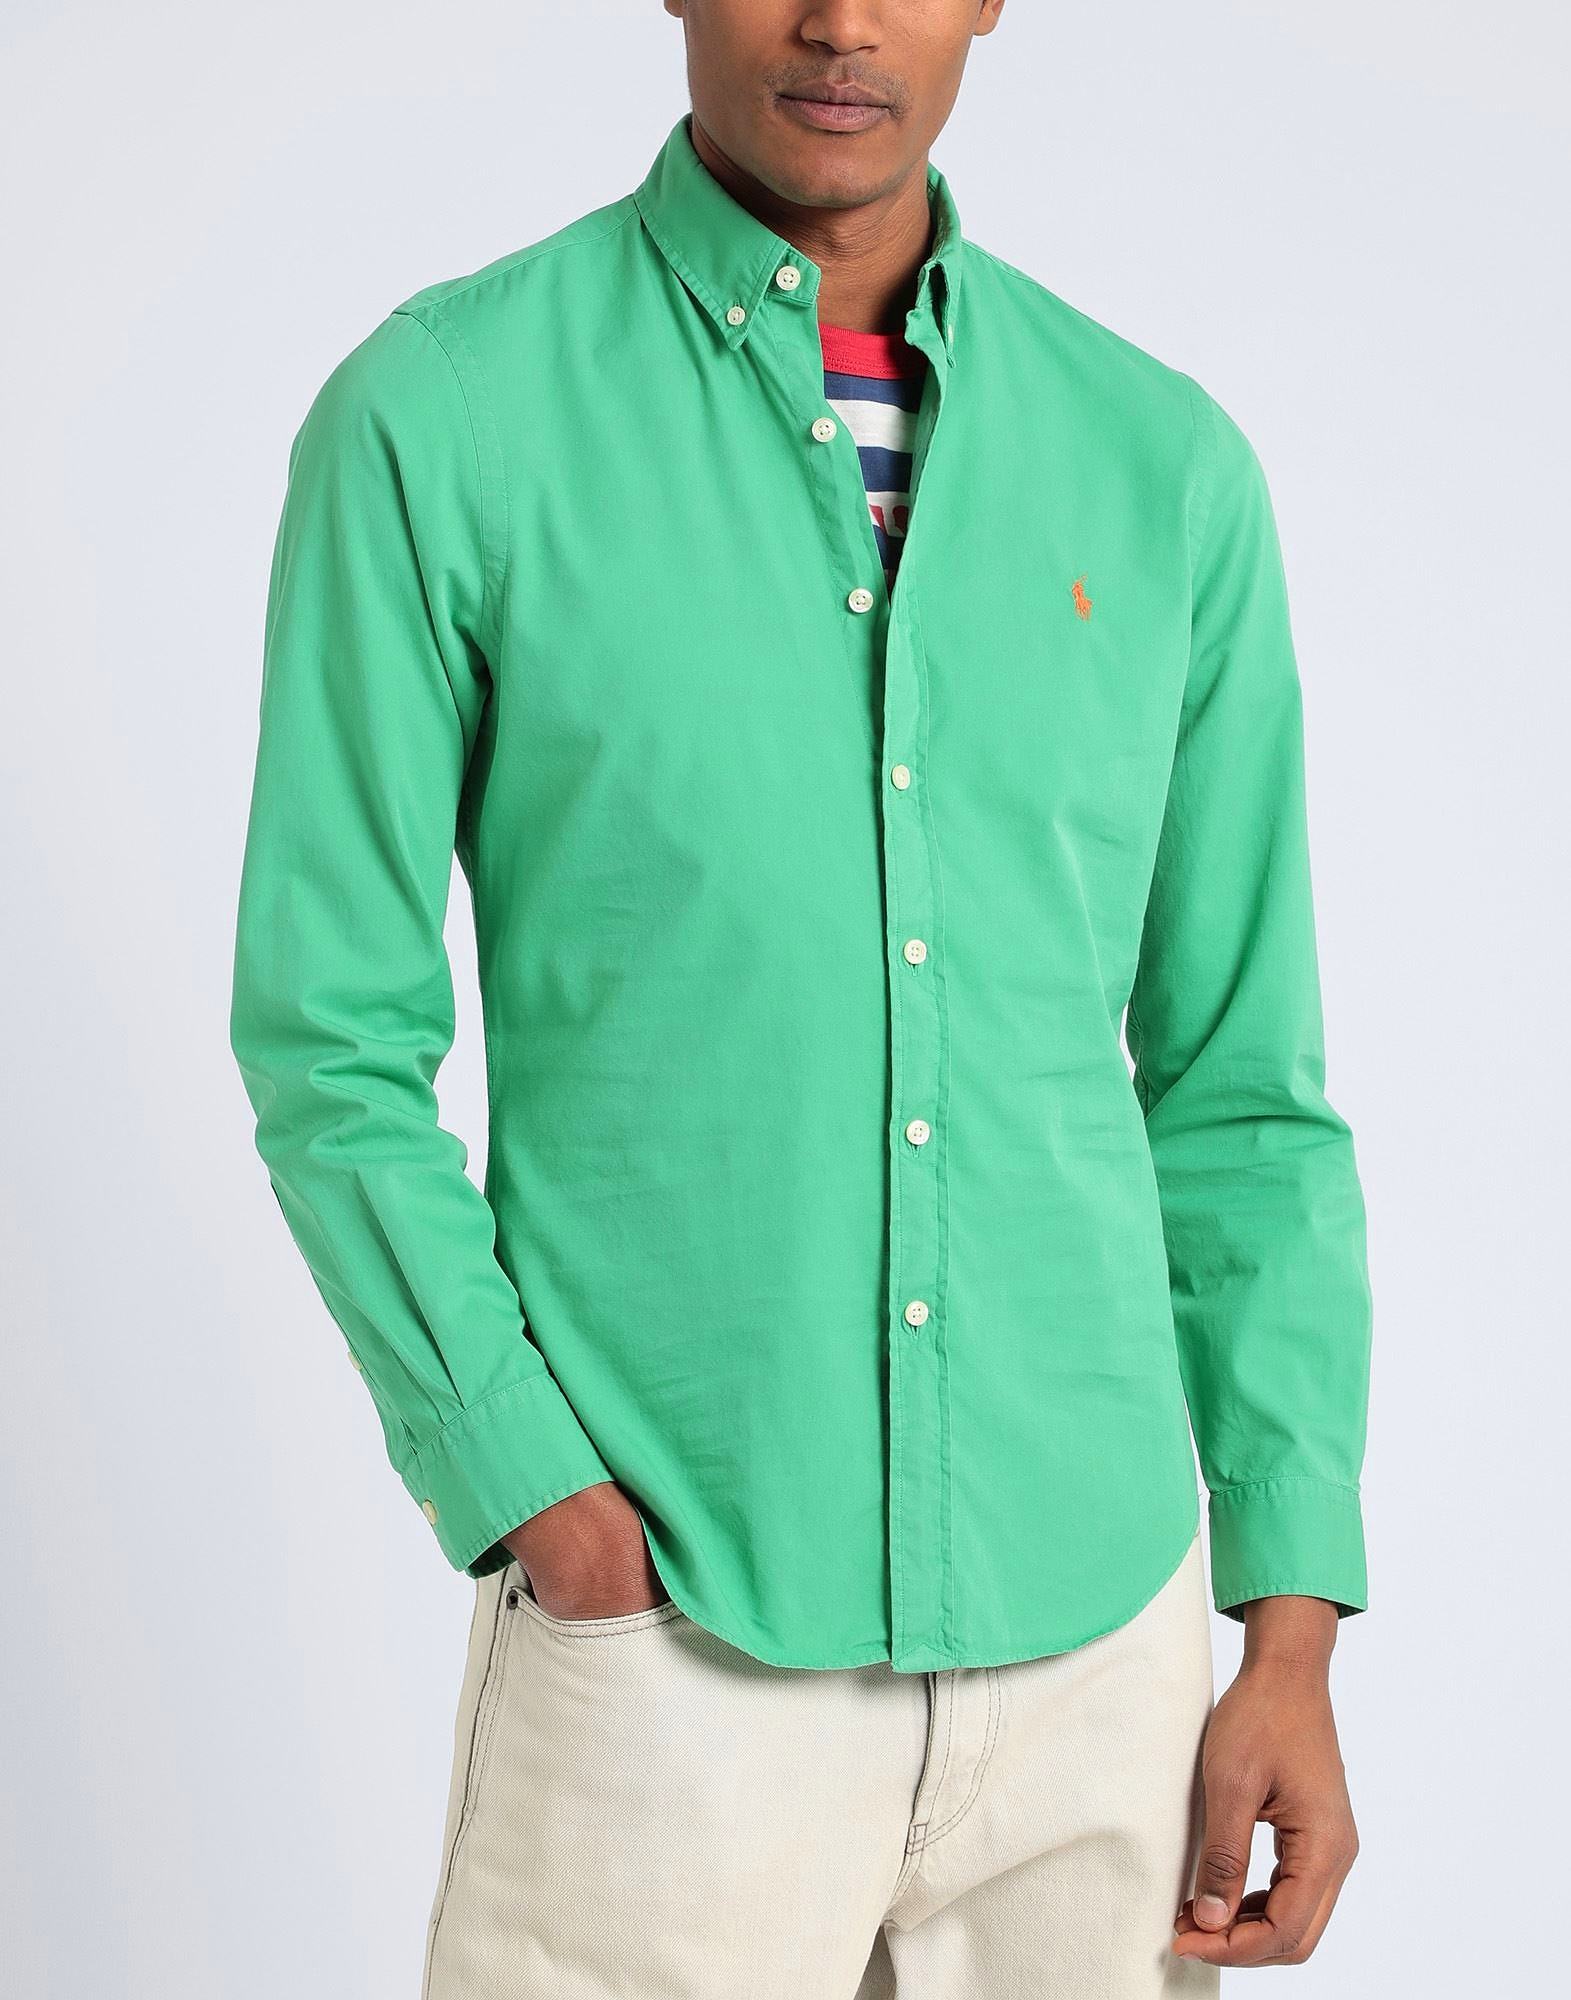 Polo Ralph Lauren SLIM FIT SHIRT green - Green